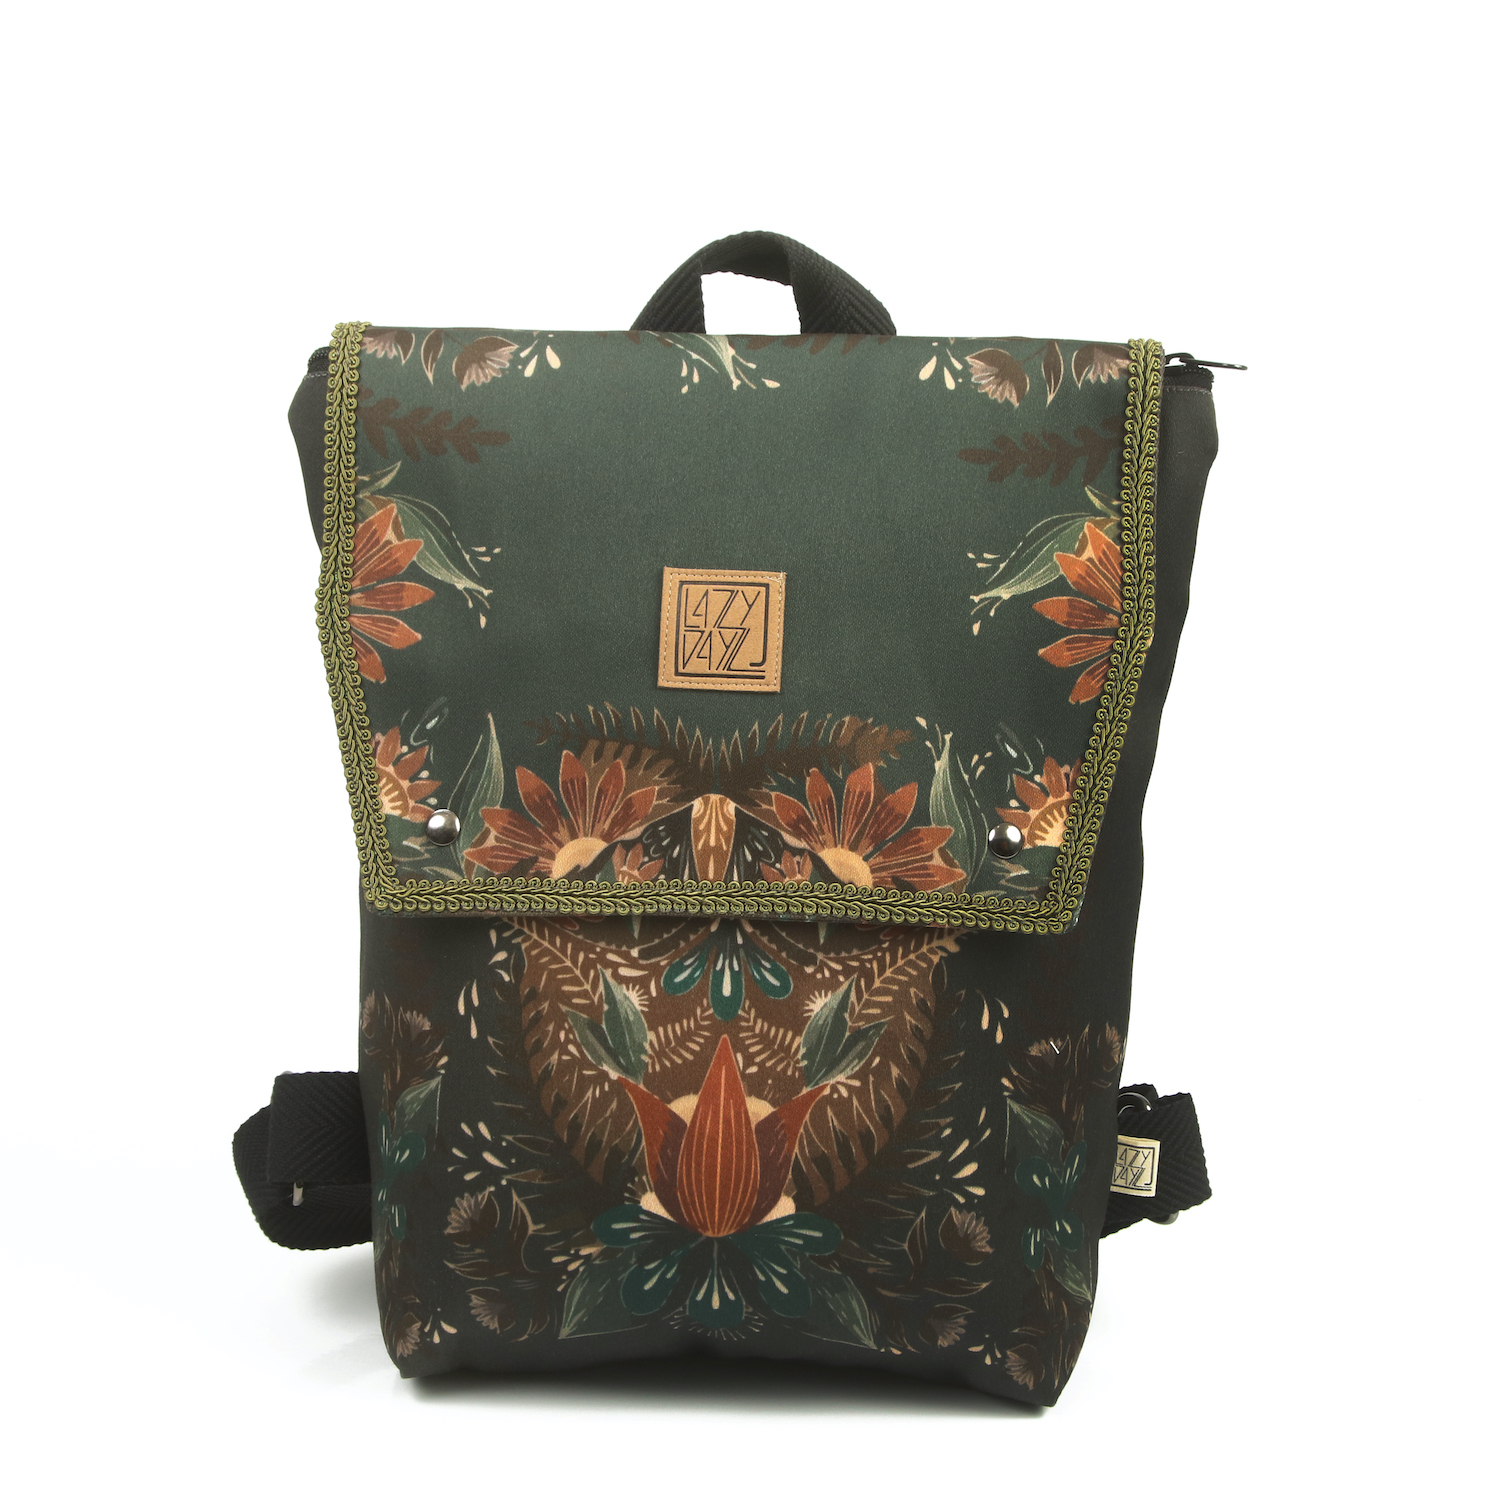 LazyDayz Designs Backpack γυναικείος σάκος πλάτης χειροποίητος bb0706